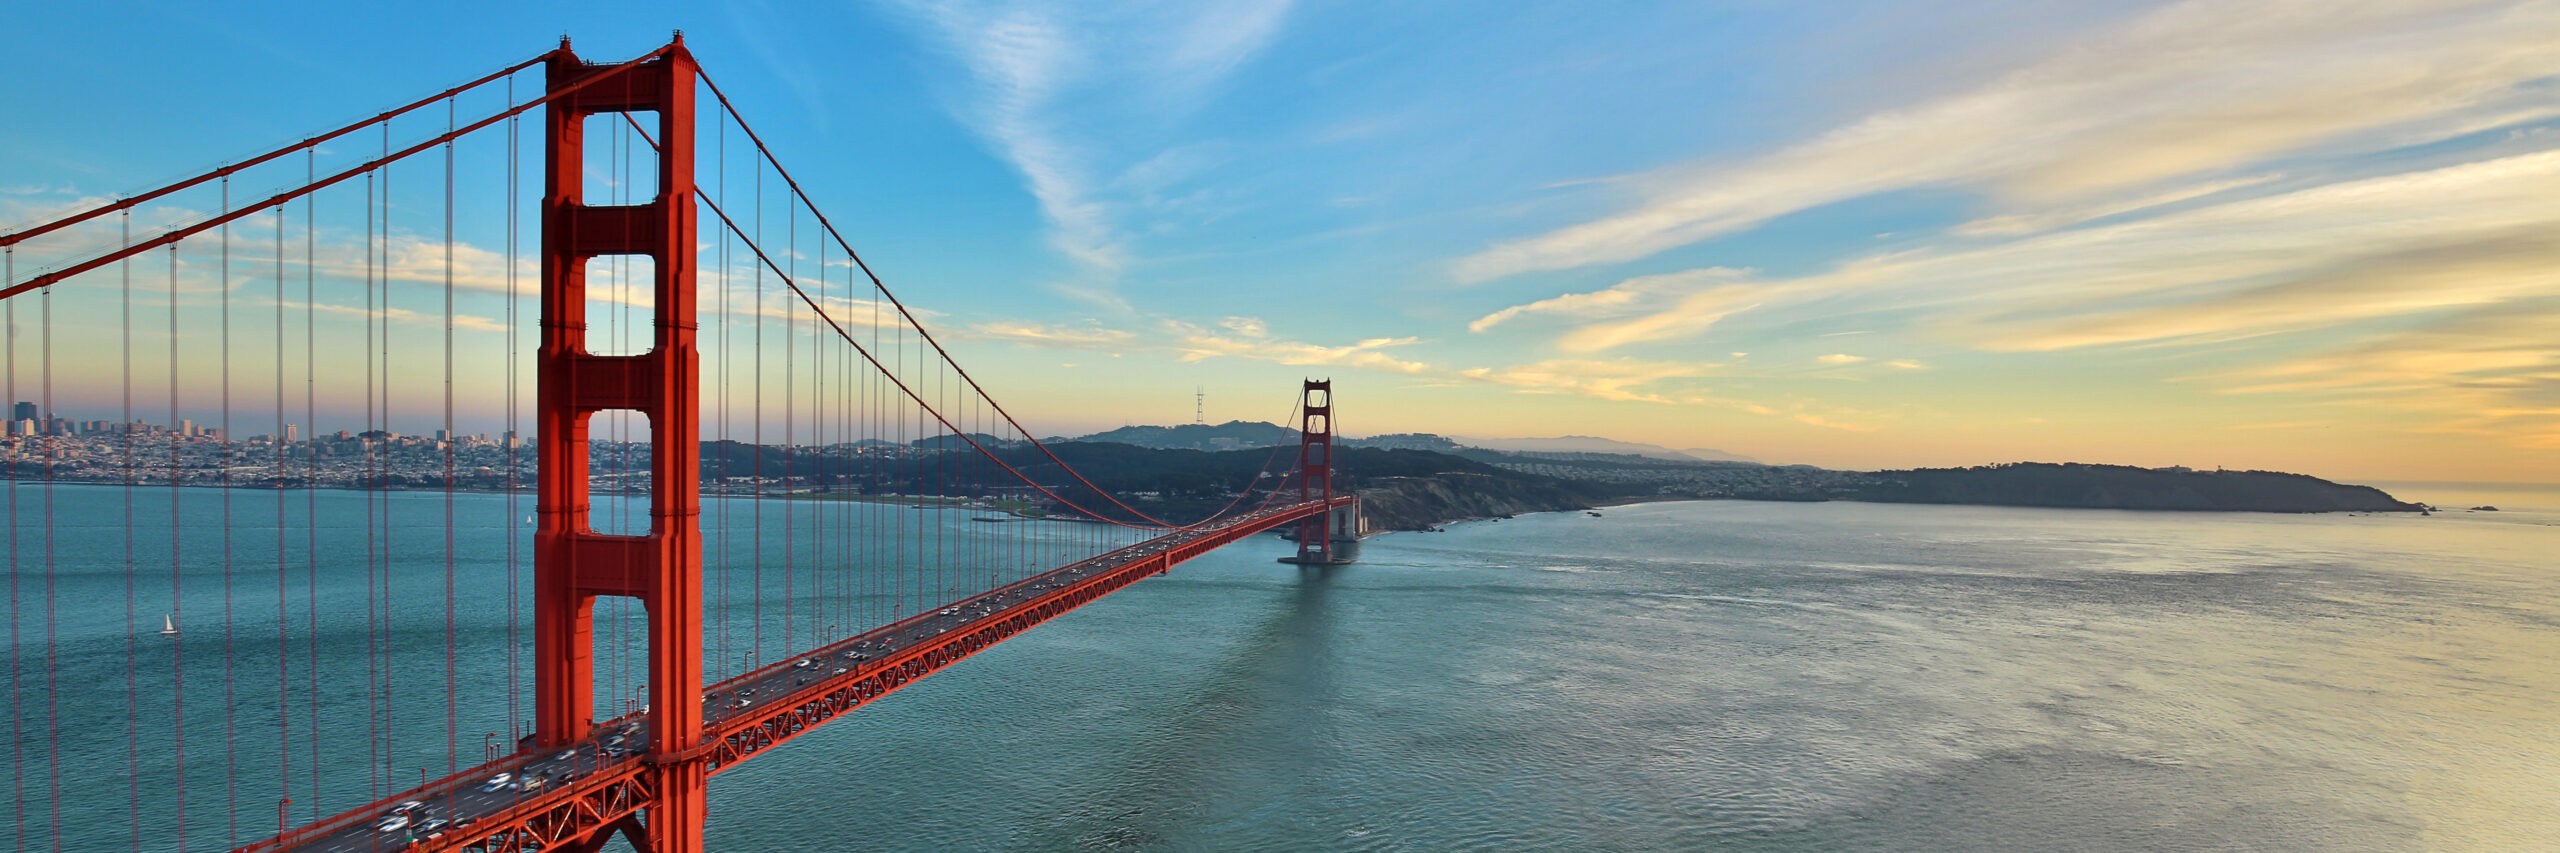 Die Golden Gate Bridge in San Francisco, Kalifornien